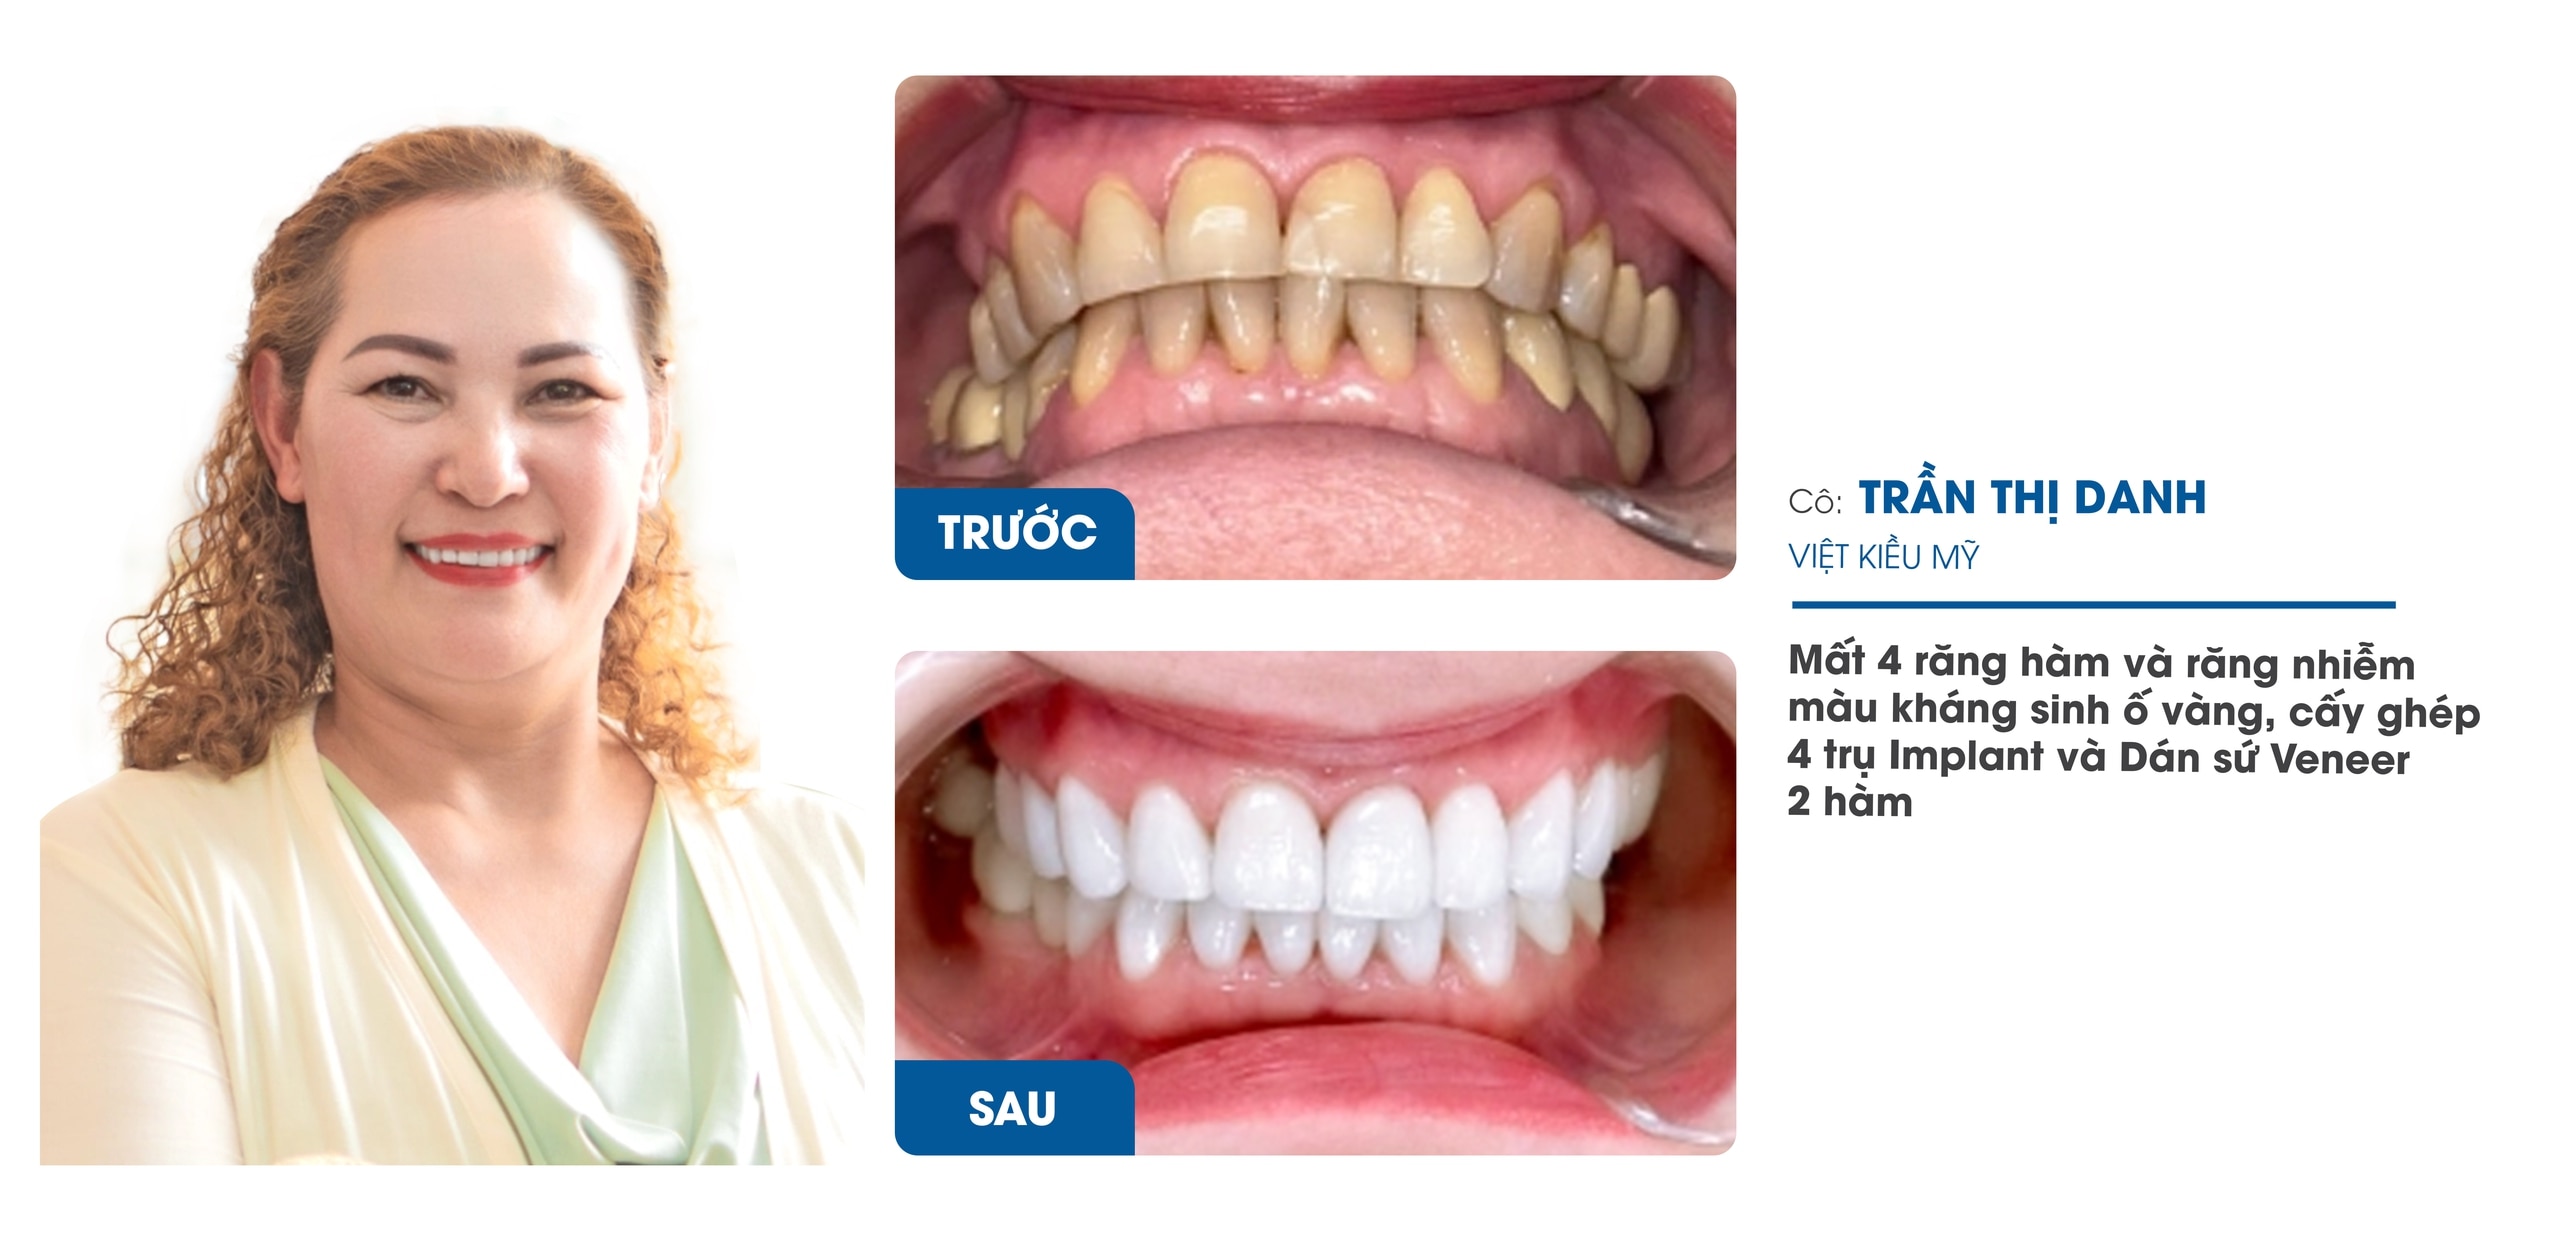 Nha Khoa Răng Sứ I-Dent Diamondtech ứng dụng công nghệ Digital Smile Design trong thiết kế nụ cười- Ảnh 3.